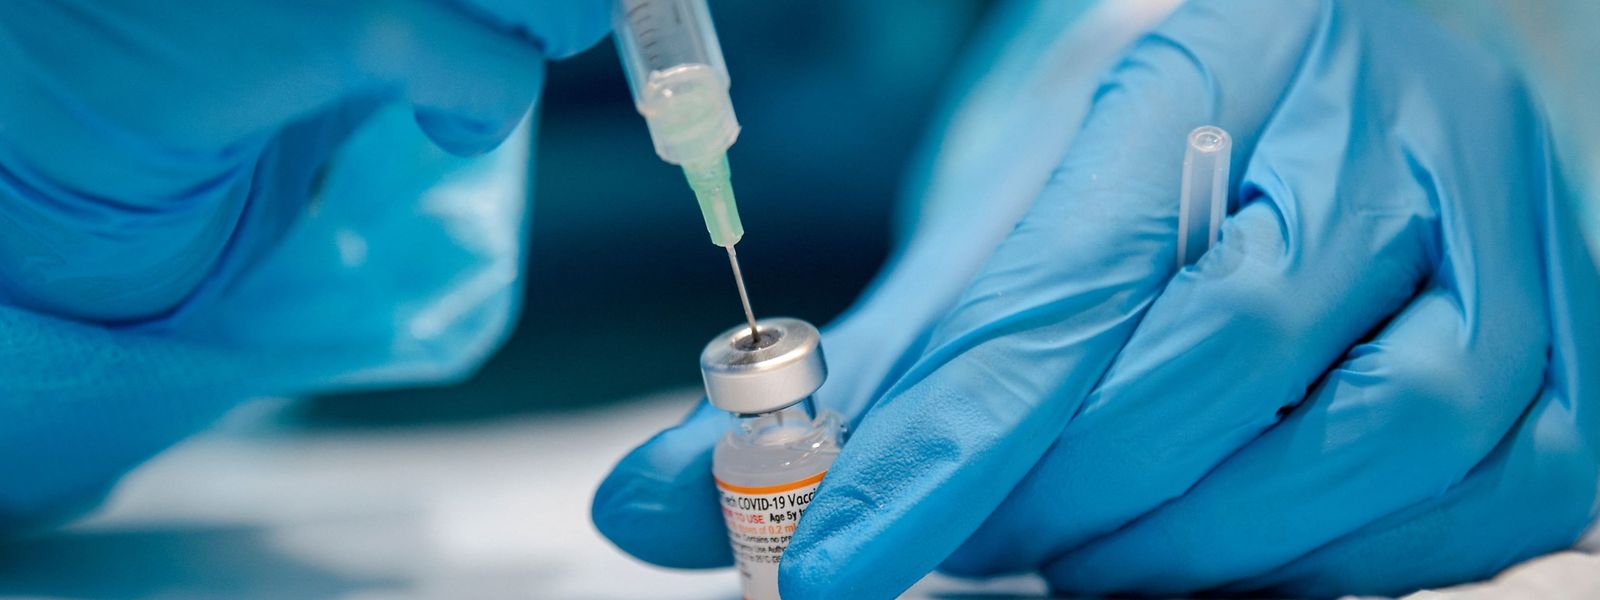 En treize mois, pas moins de 1,13 million de vaccins anti-covid ont été administrés au Grand-Duché.